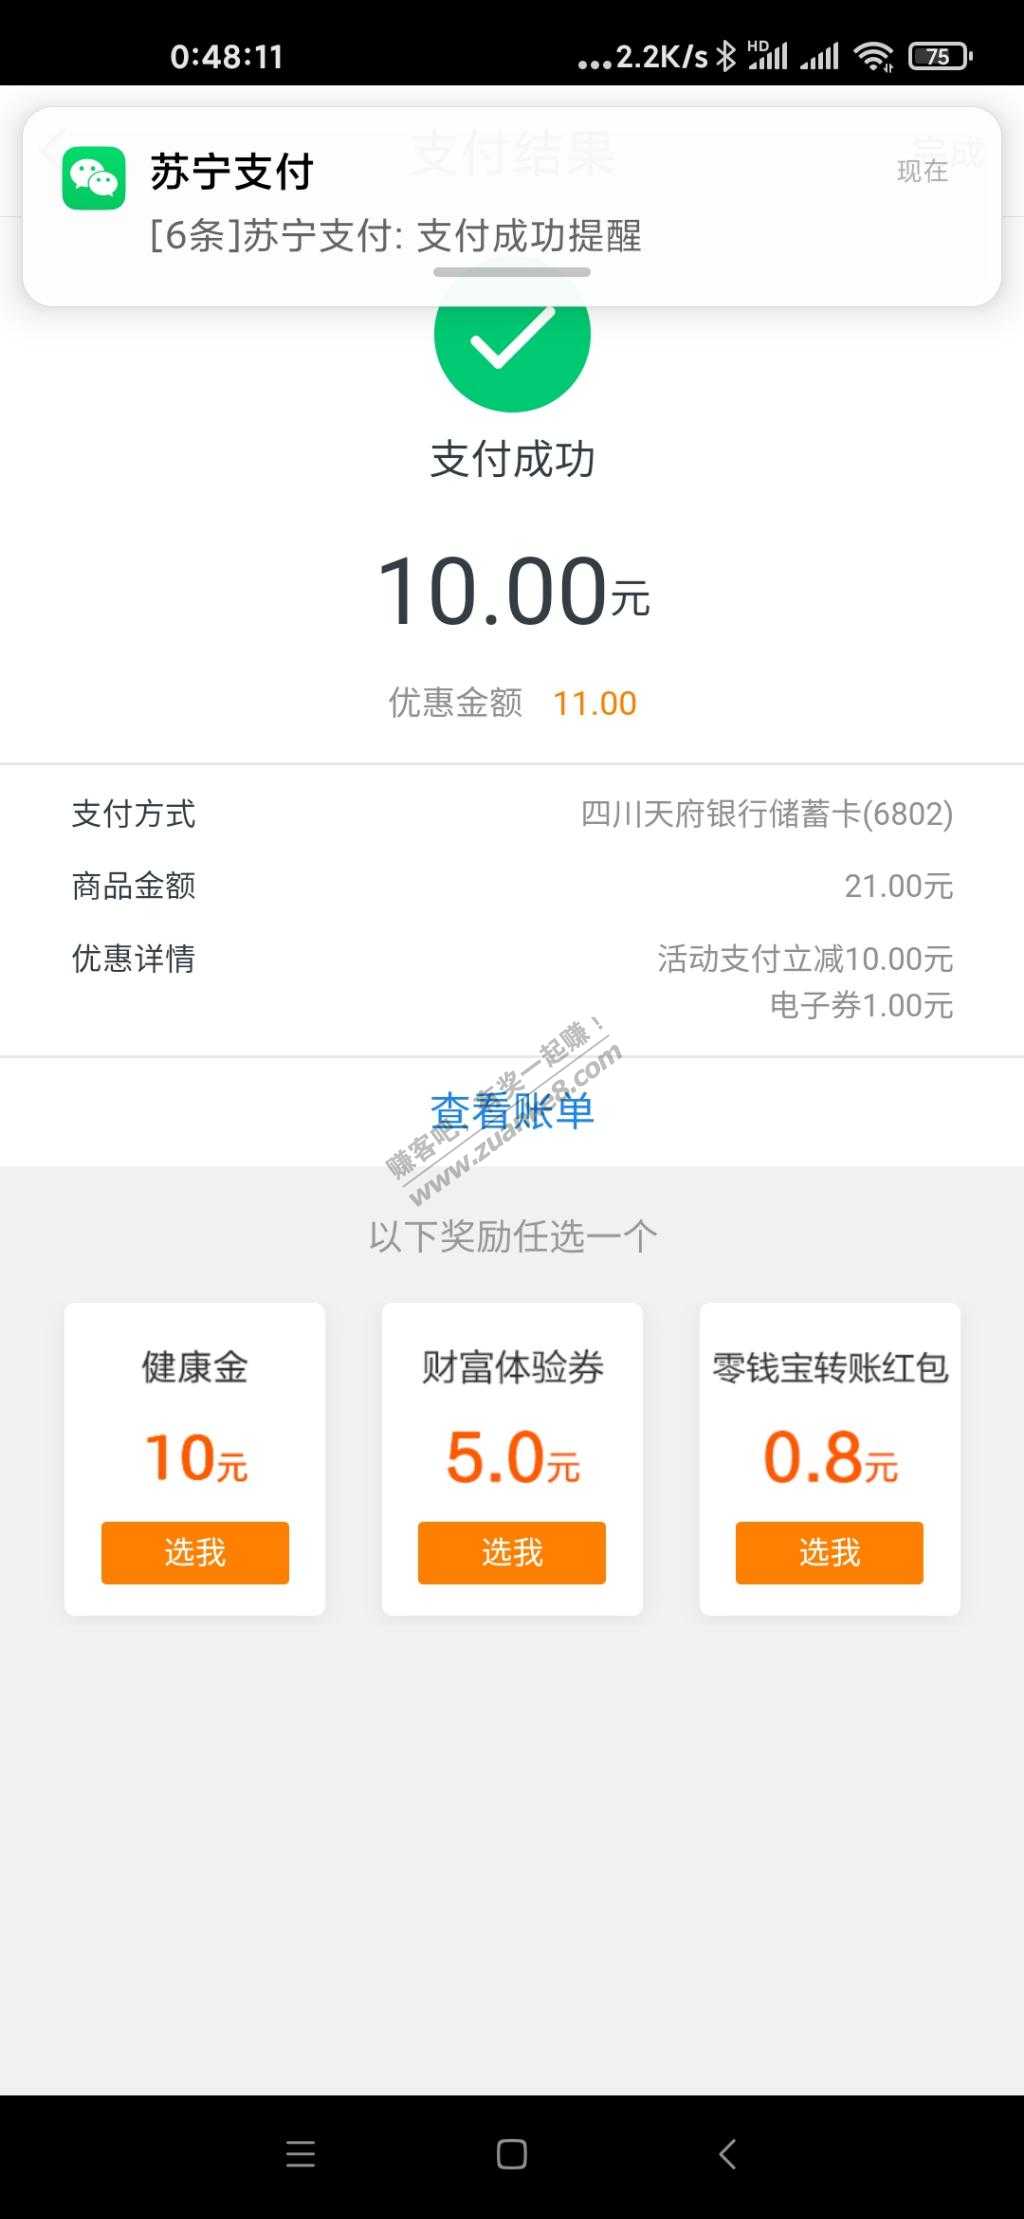 苏宁天府银行20-10-惠小助(52huixz.com)